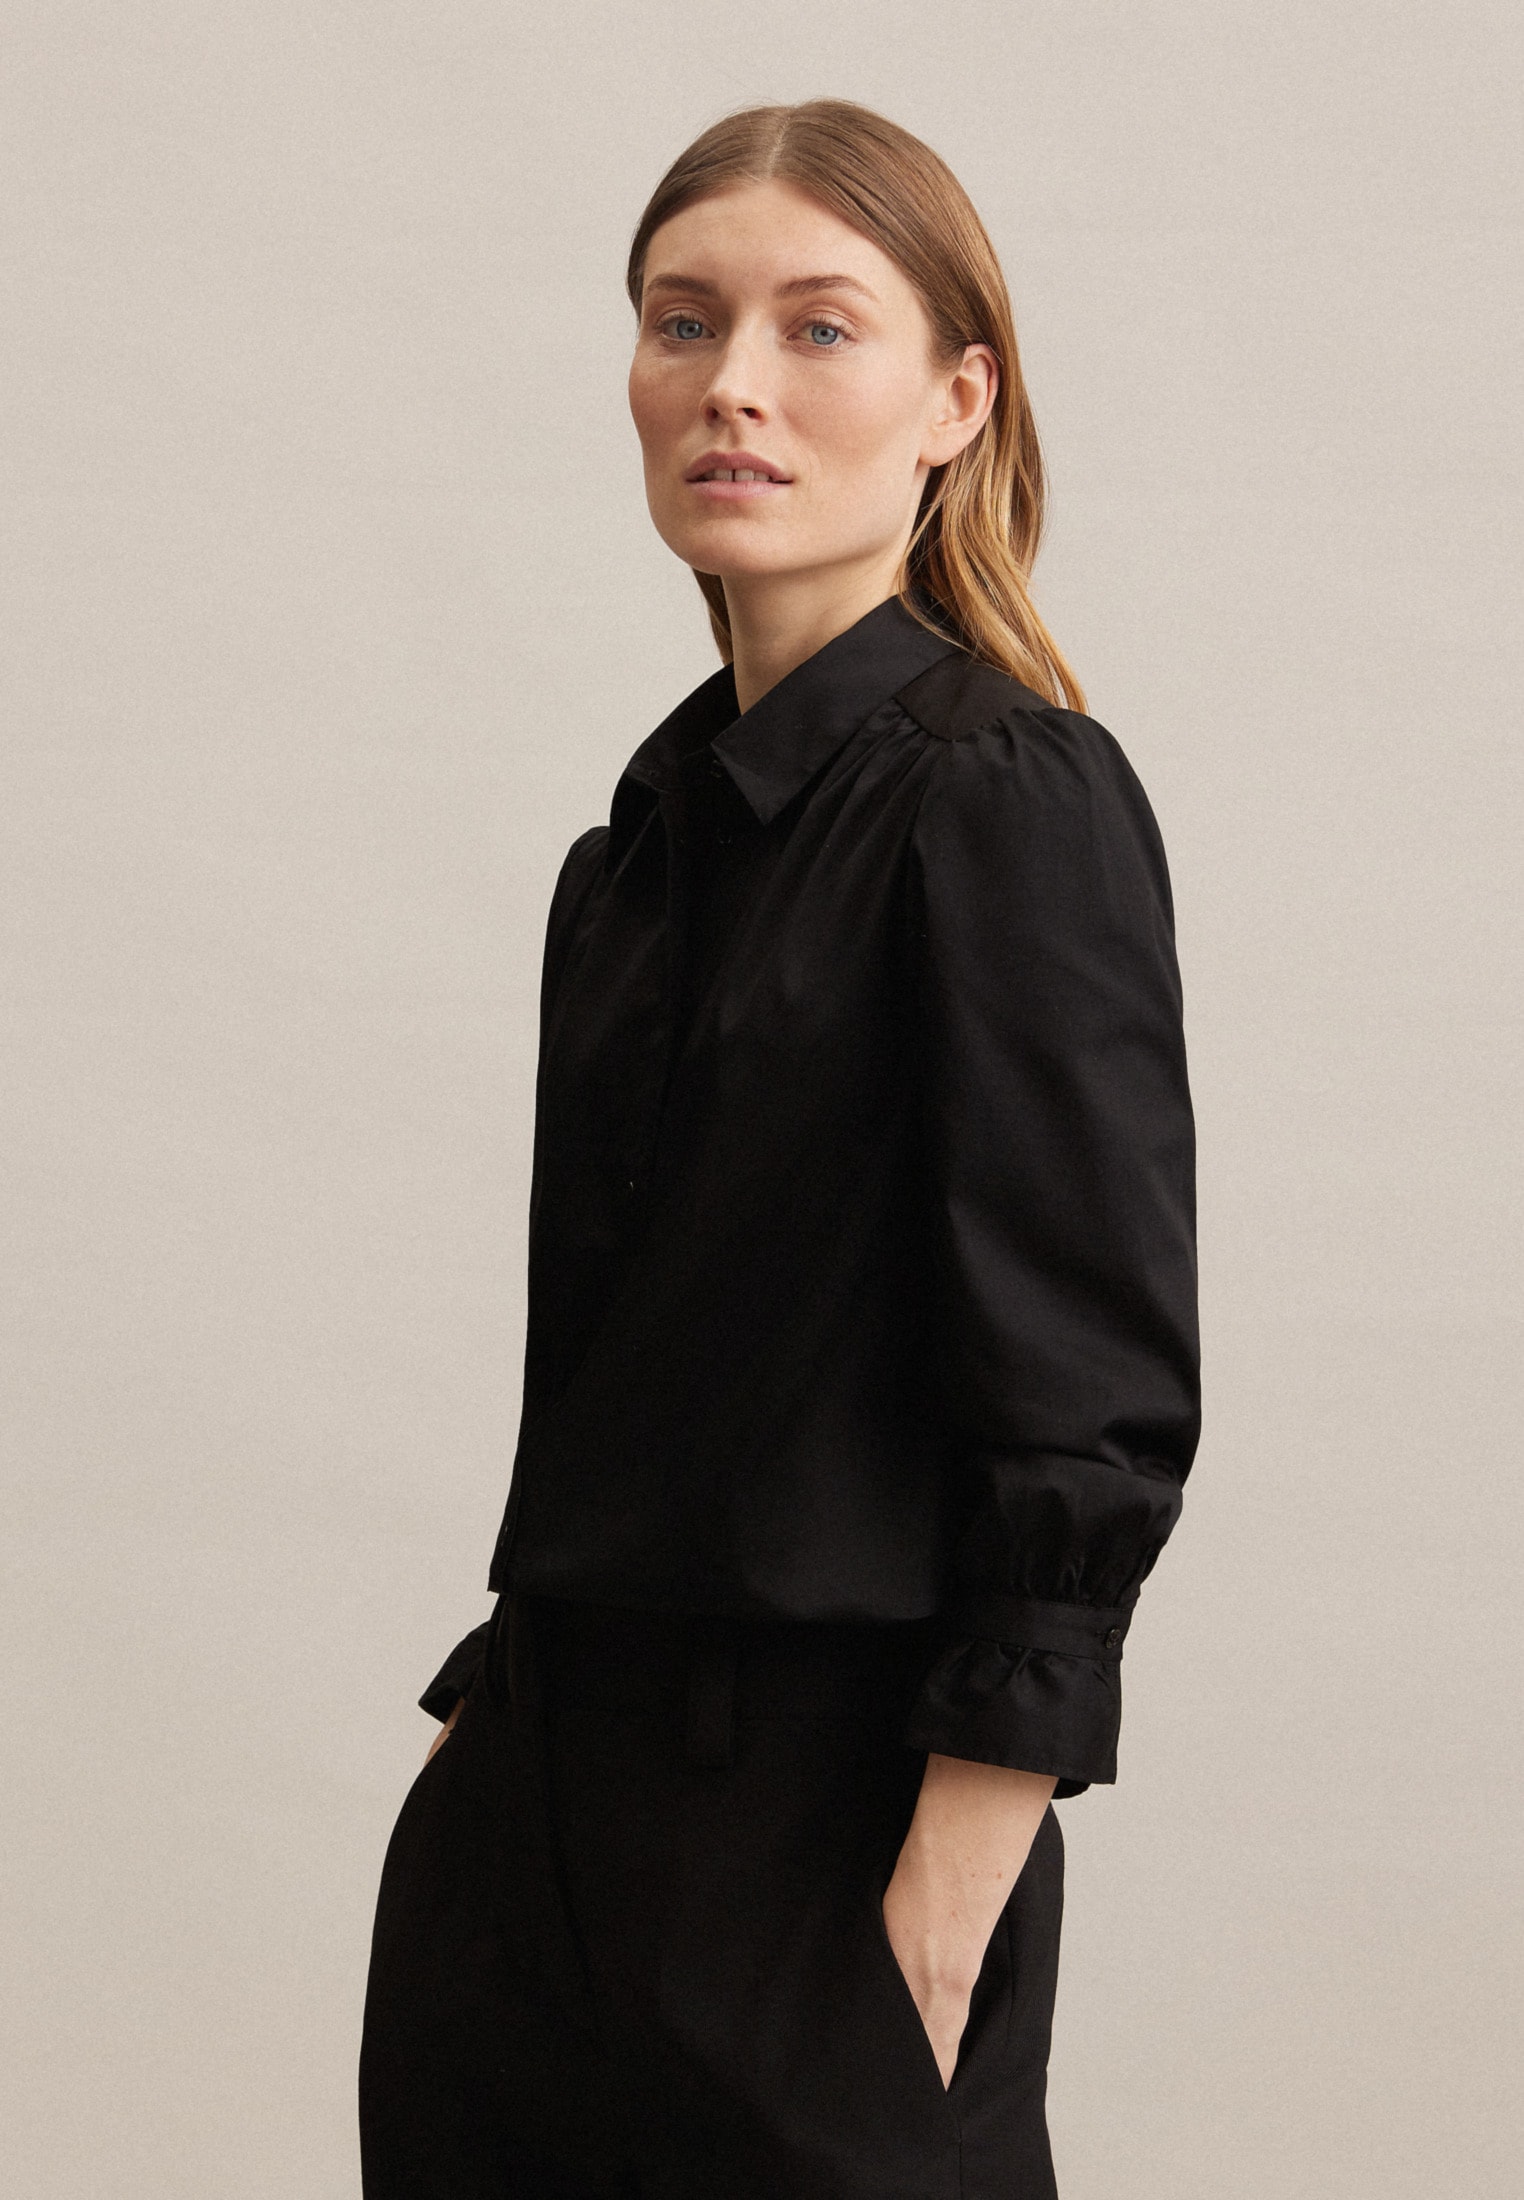 »Schwarze Kragen glänzend im Shop Rose«, OTTO Online kaufen Uni Hemdbluse seidensticker